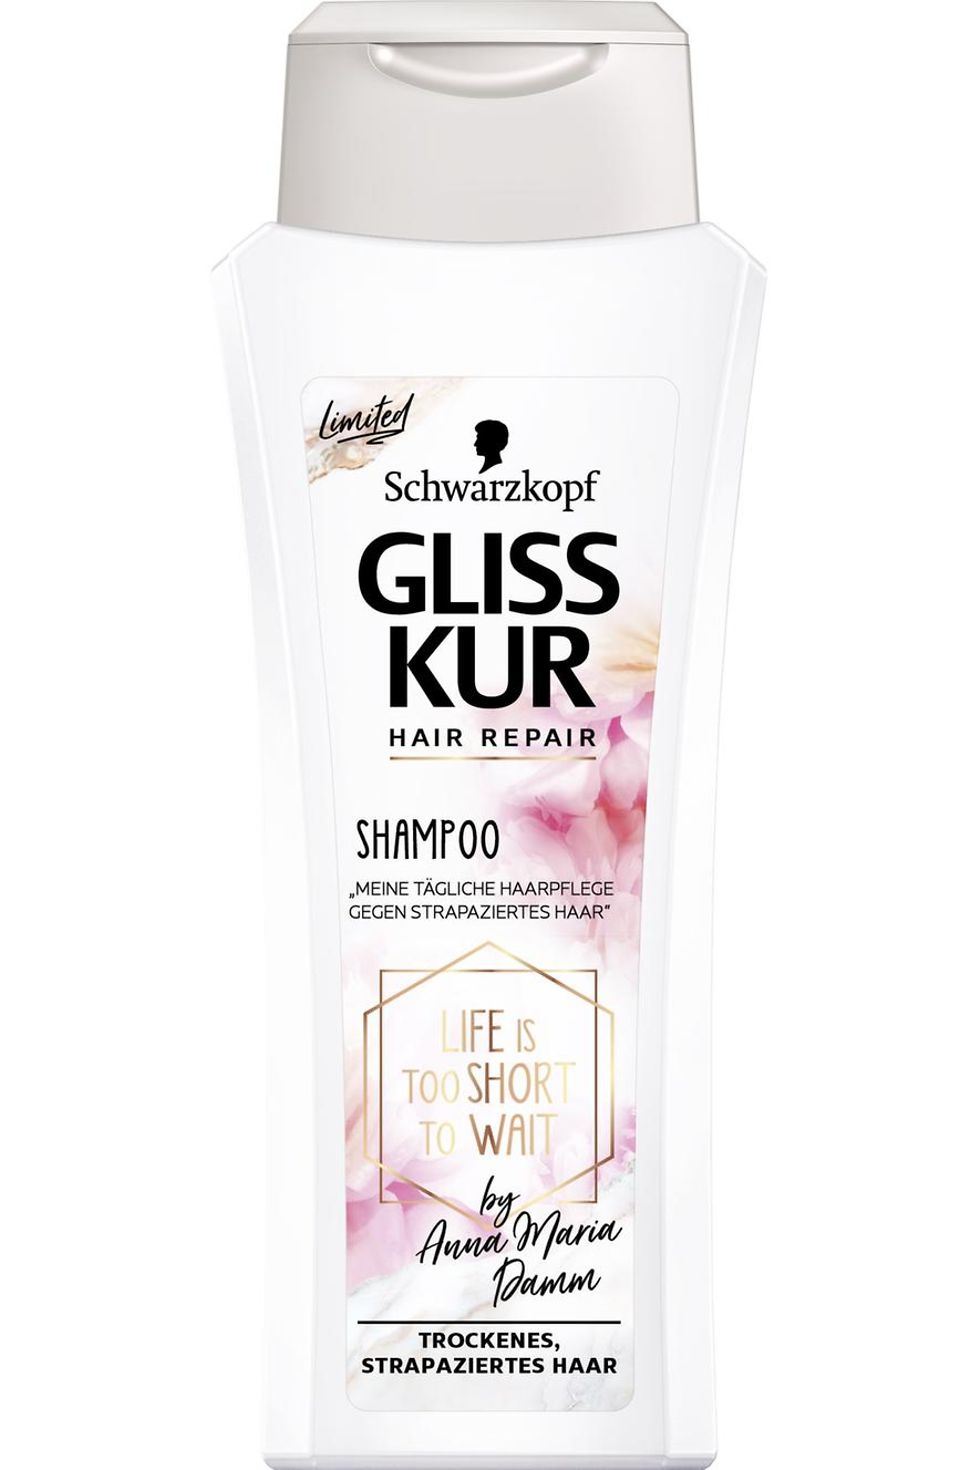 Gliss Kur Hair Repair Shampoo by Anna Maria Damm